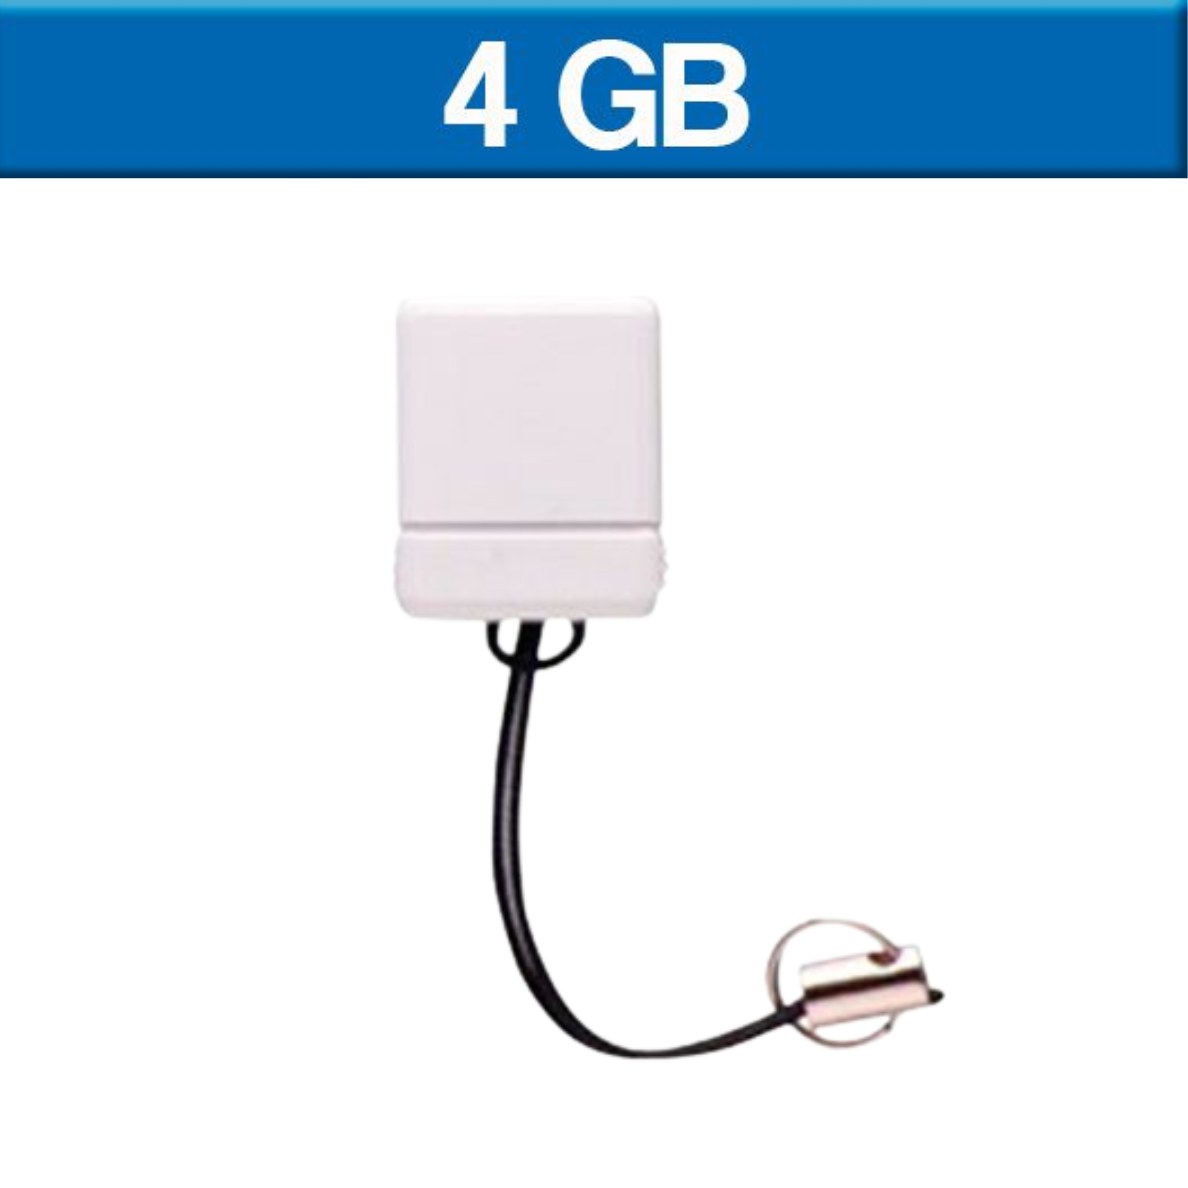 USB045, MEMORIA USB MICRO
Memoria USB MICRO con Colguije

Capacidad 4 GB